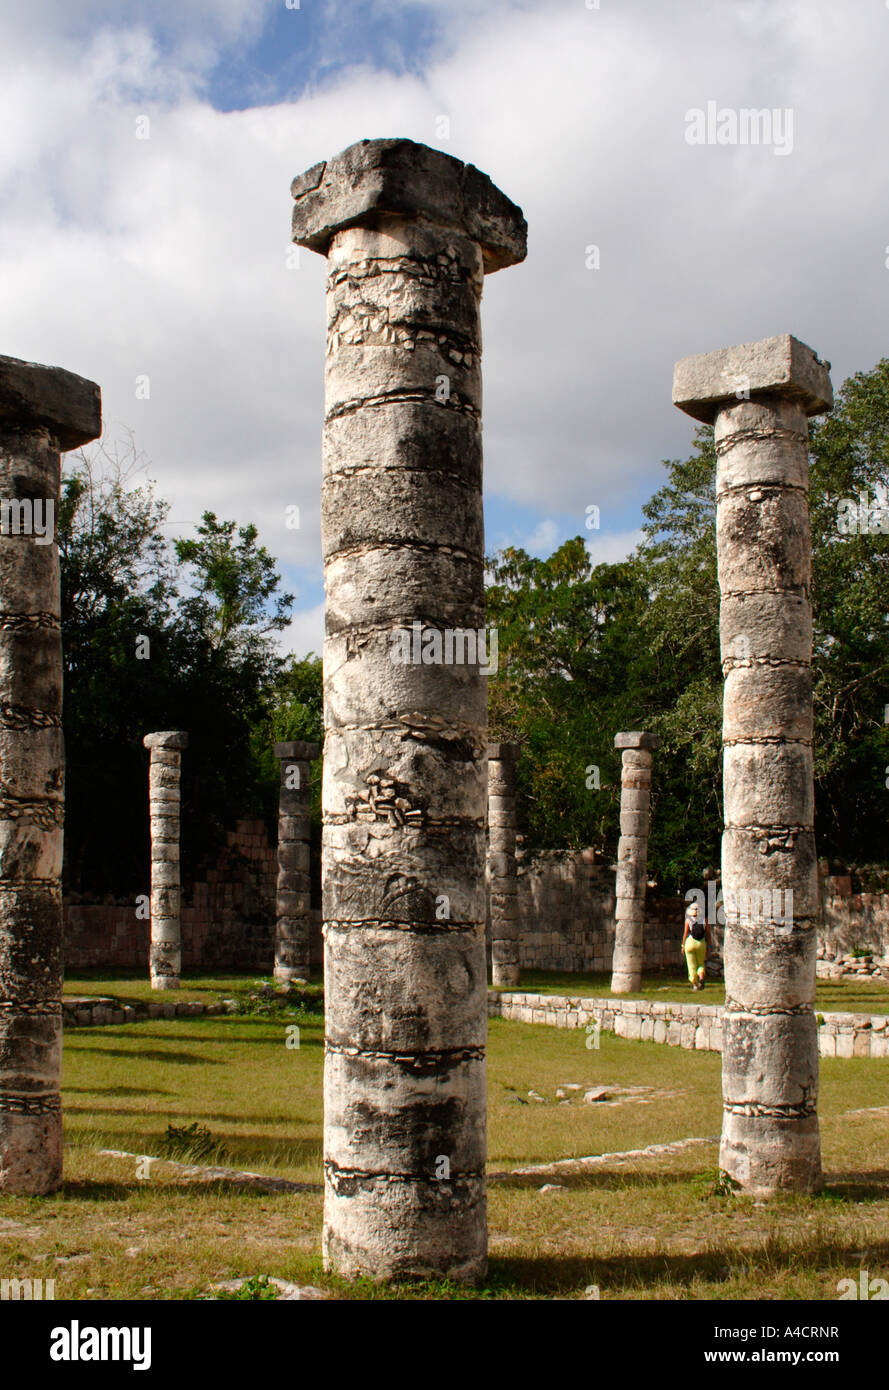 Chichen Itza, Maya-Ruine Ausgrabungsstätte in North Central Yucatan zeigt toltekischen Einfluss von Zentral-Mexiko Stockfoto